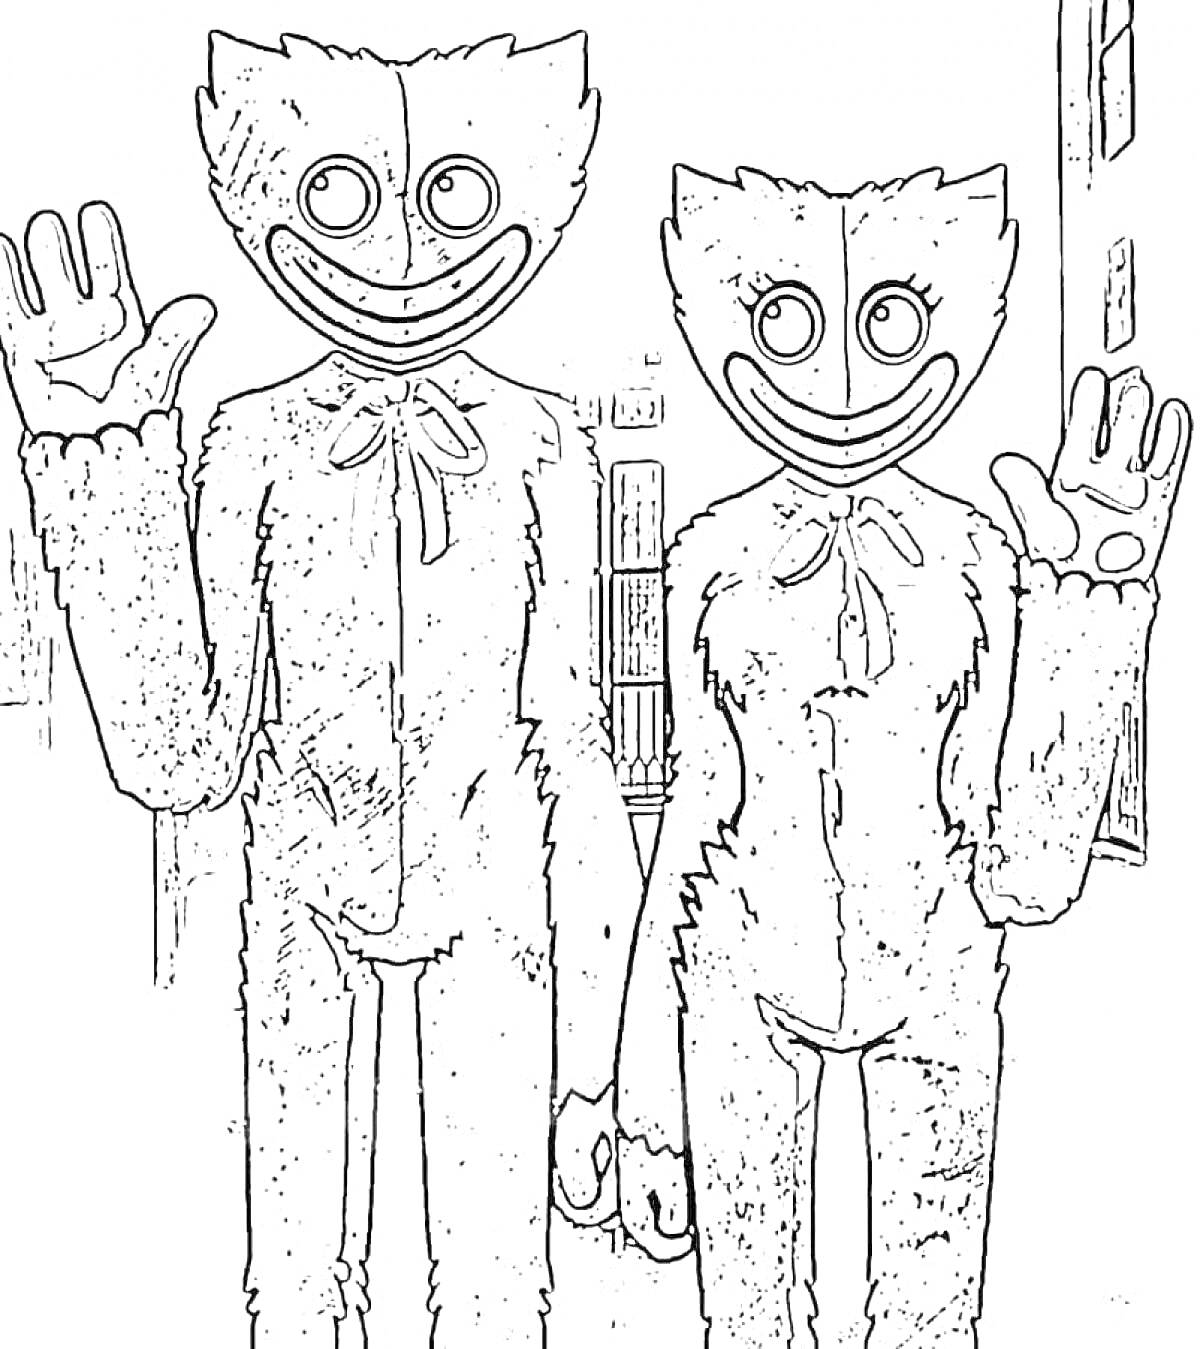 Раскраска силуэты двух антропоморфных фигур с длинными конечностями, держащихся за руки и поднимающих одну руку в приветственном жесте, с улыбками на лицах и силуэтами зданий на заднем плане.